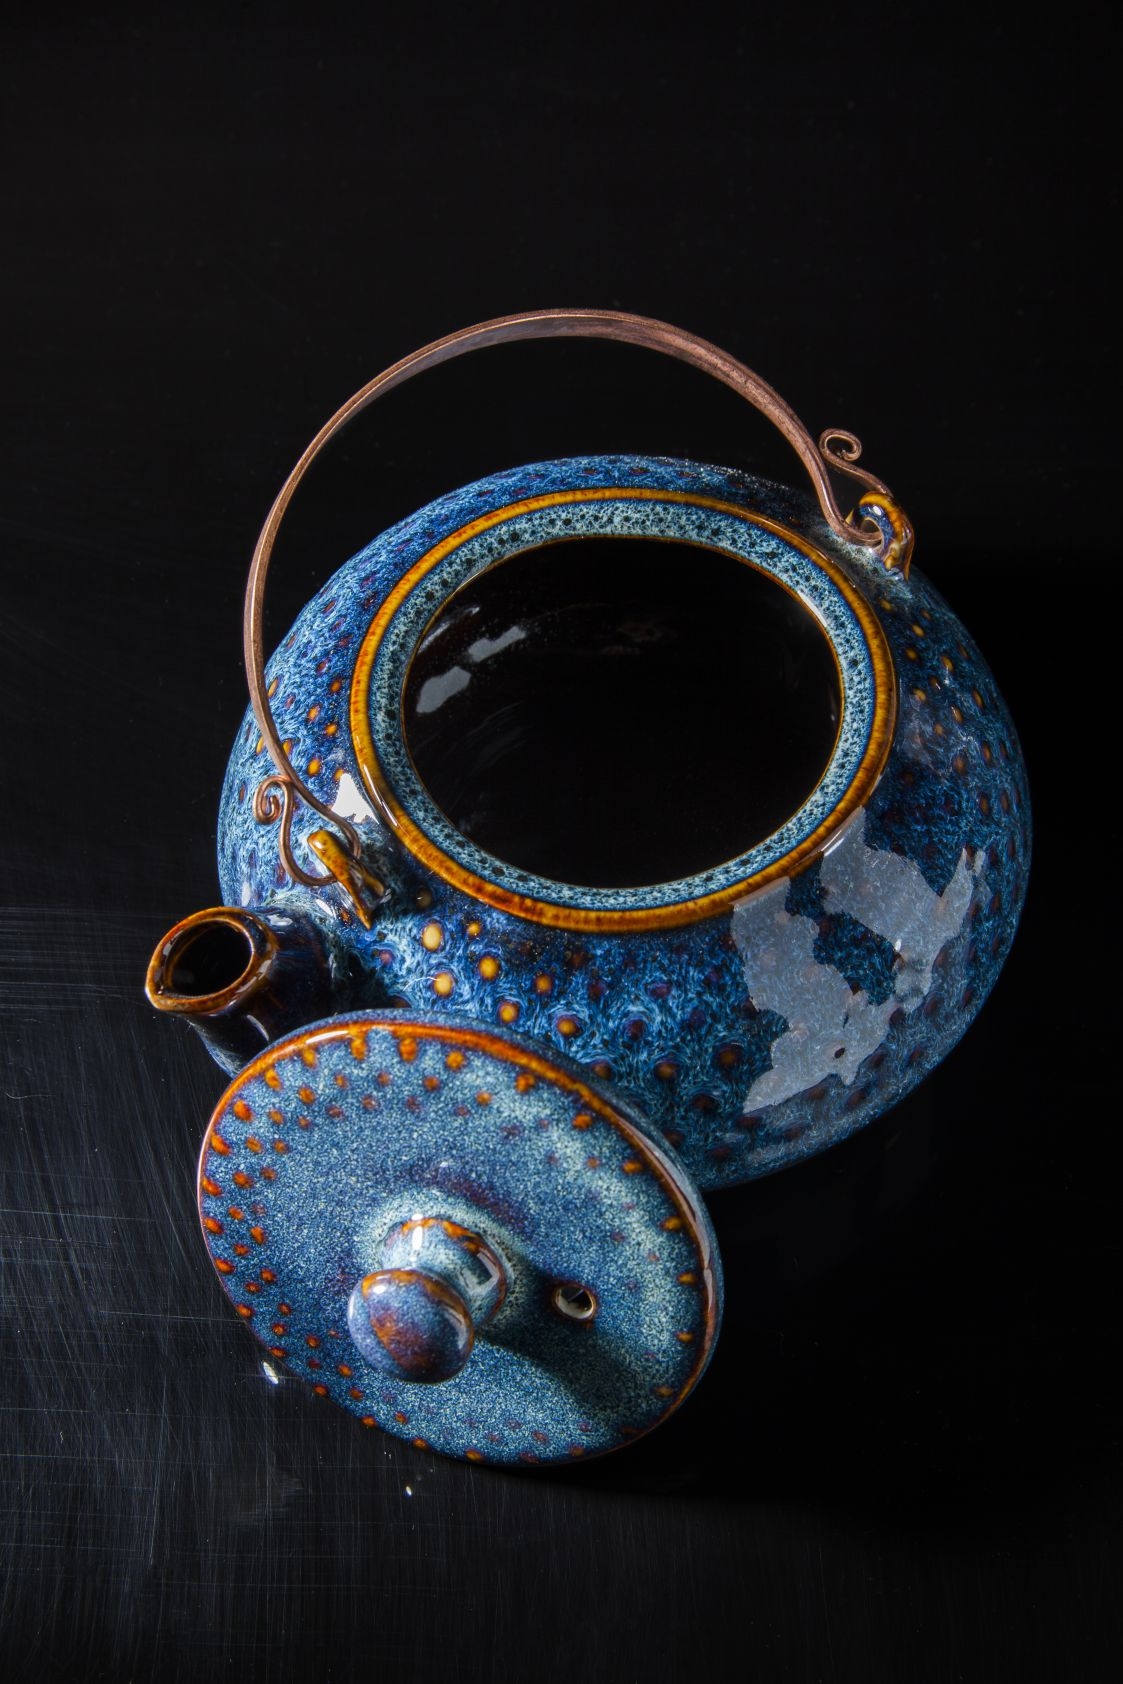 Blue glaze oval teapot